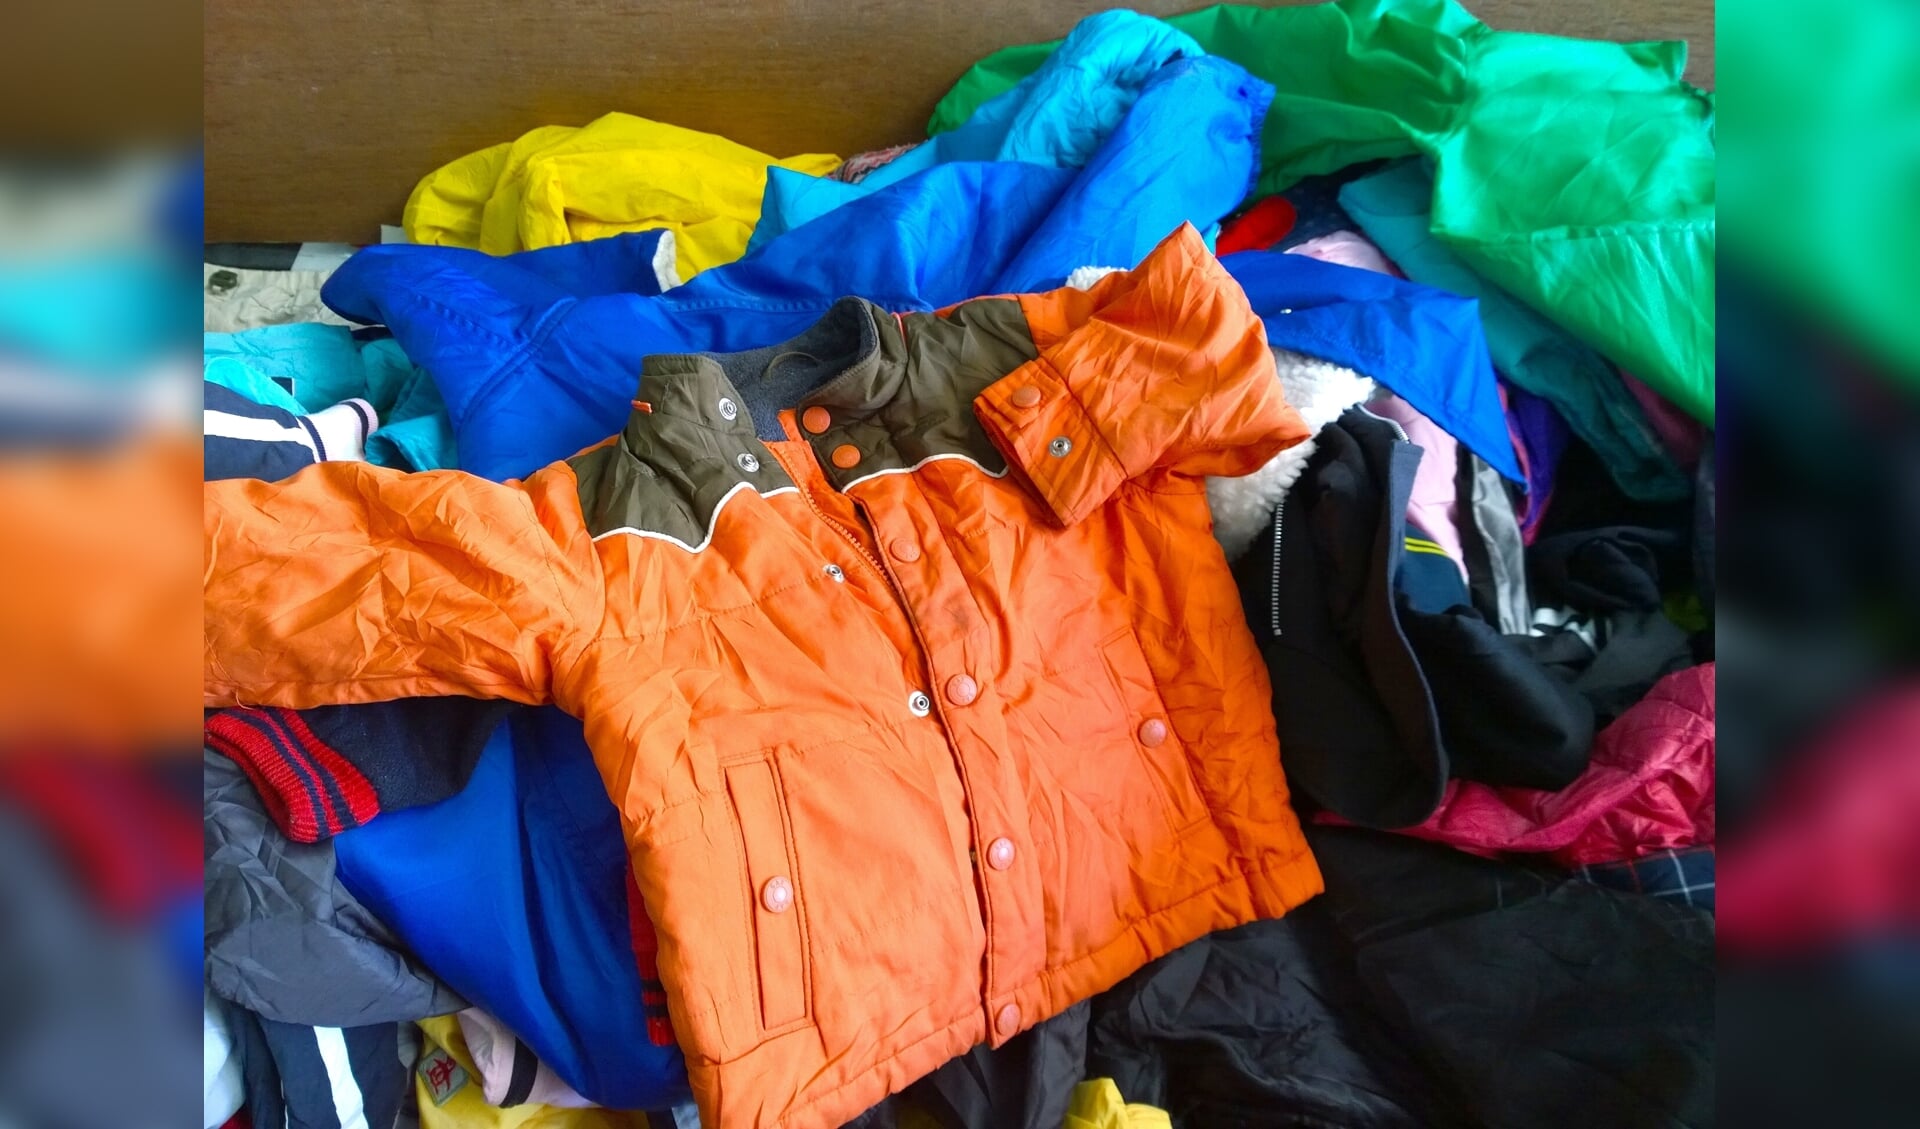 De oude kleding krijgt weer een nieuwe bestemming bij de tweedehands kinderkledingbeurs